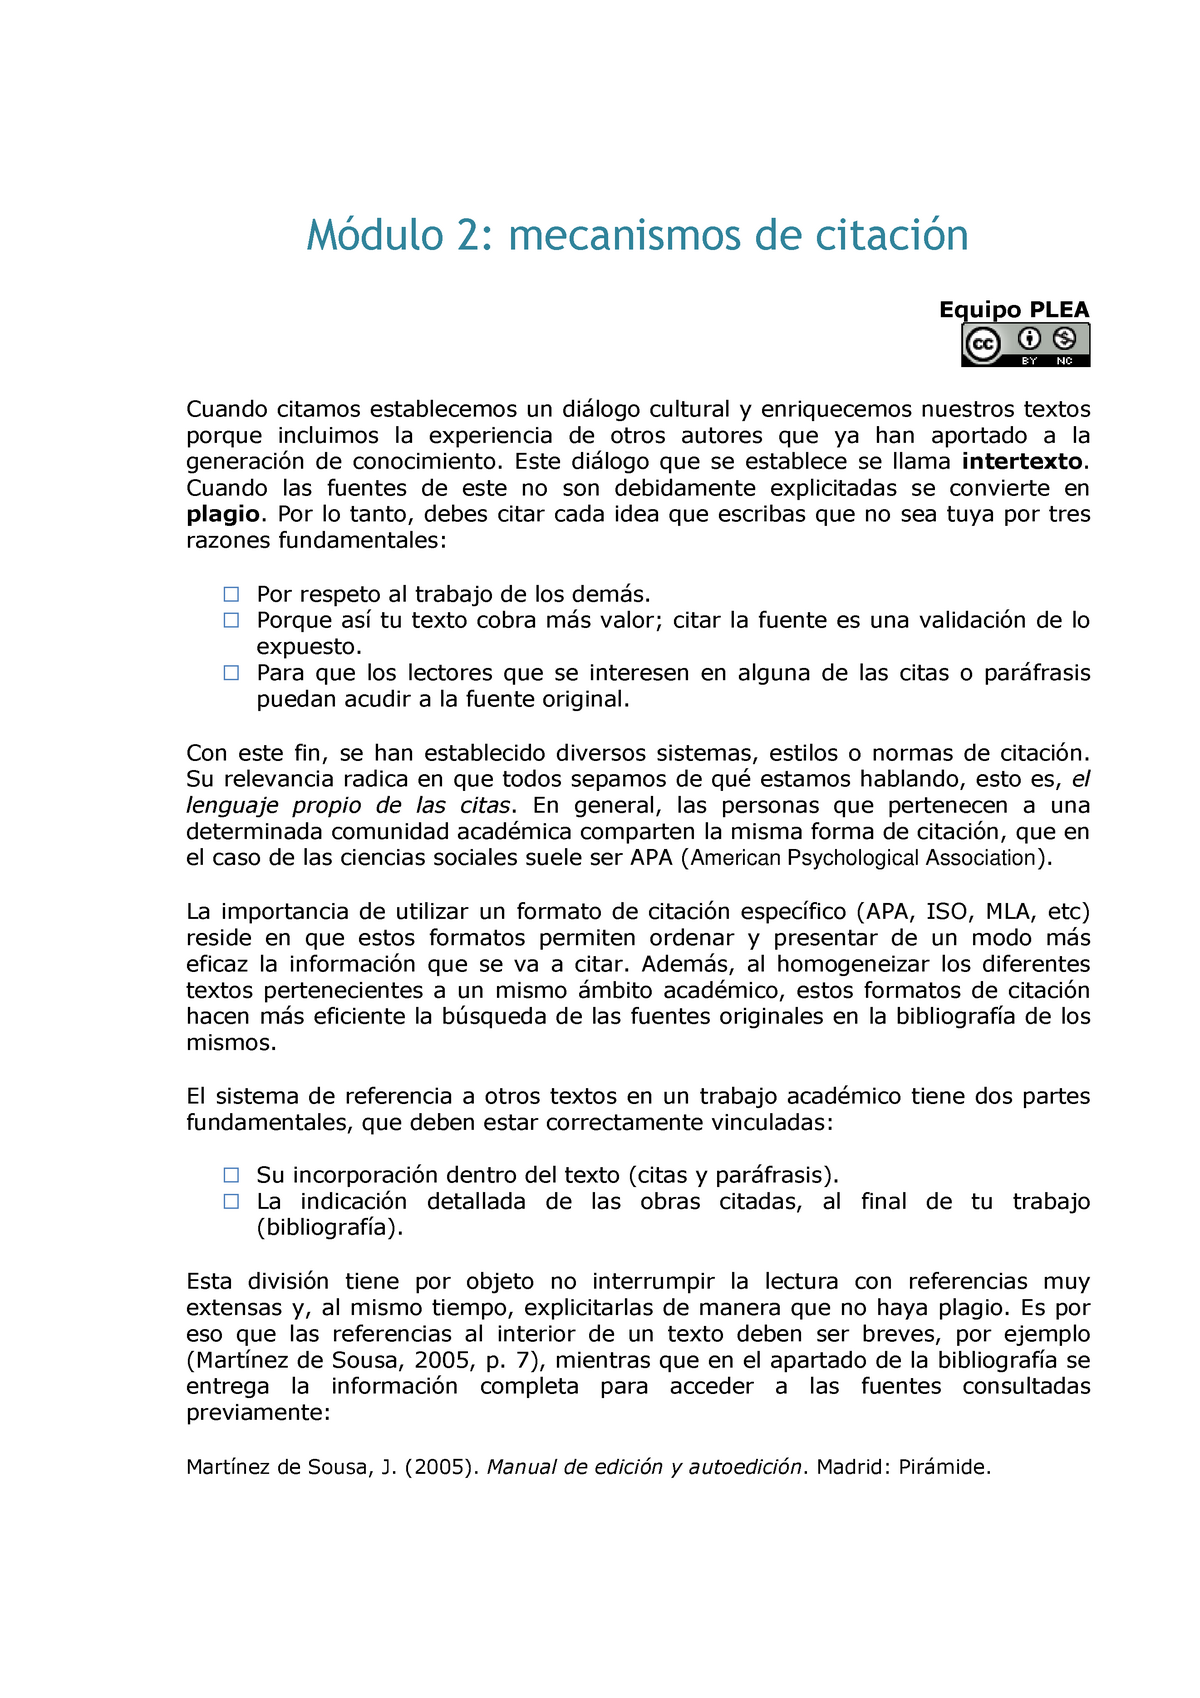 Mod 2 citas APA - Documento de citación académica de normas APA - Módulo 2:  mecanismos de citación - Studocu